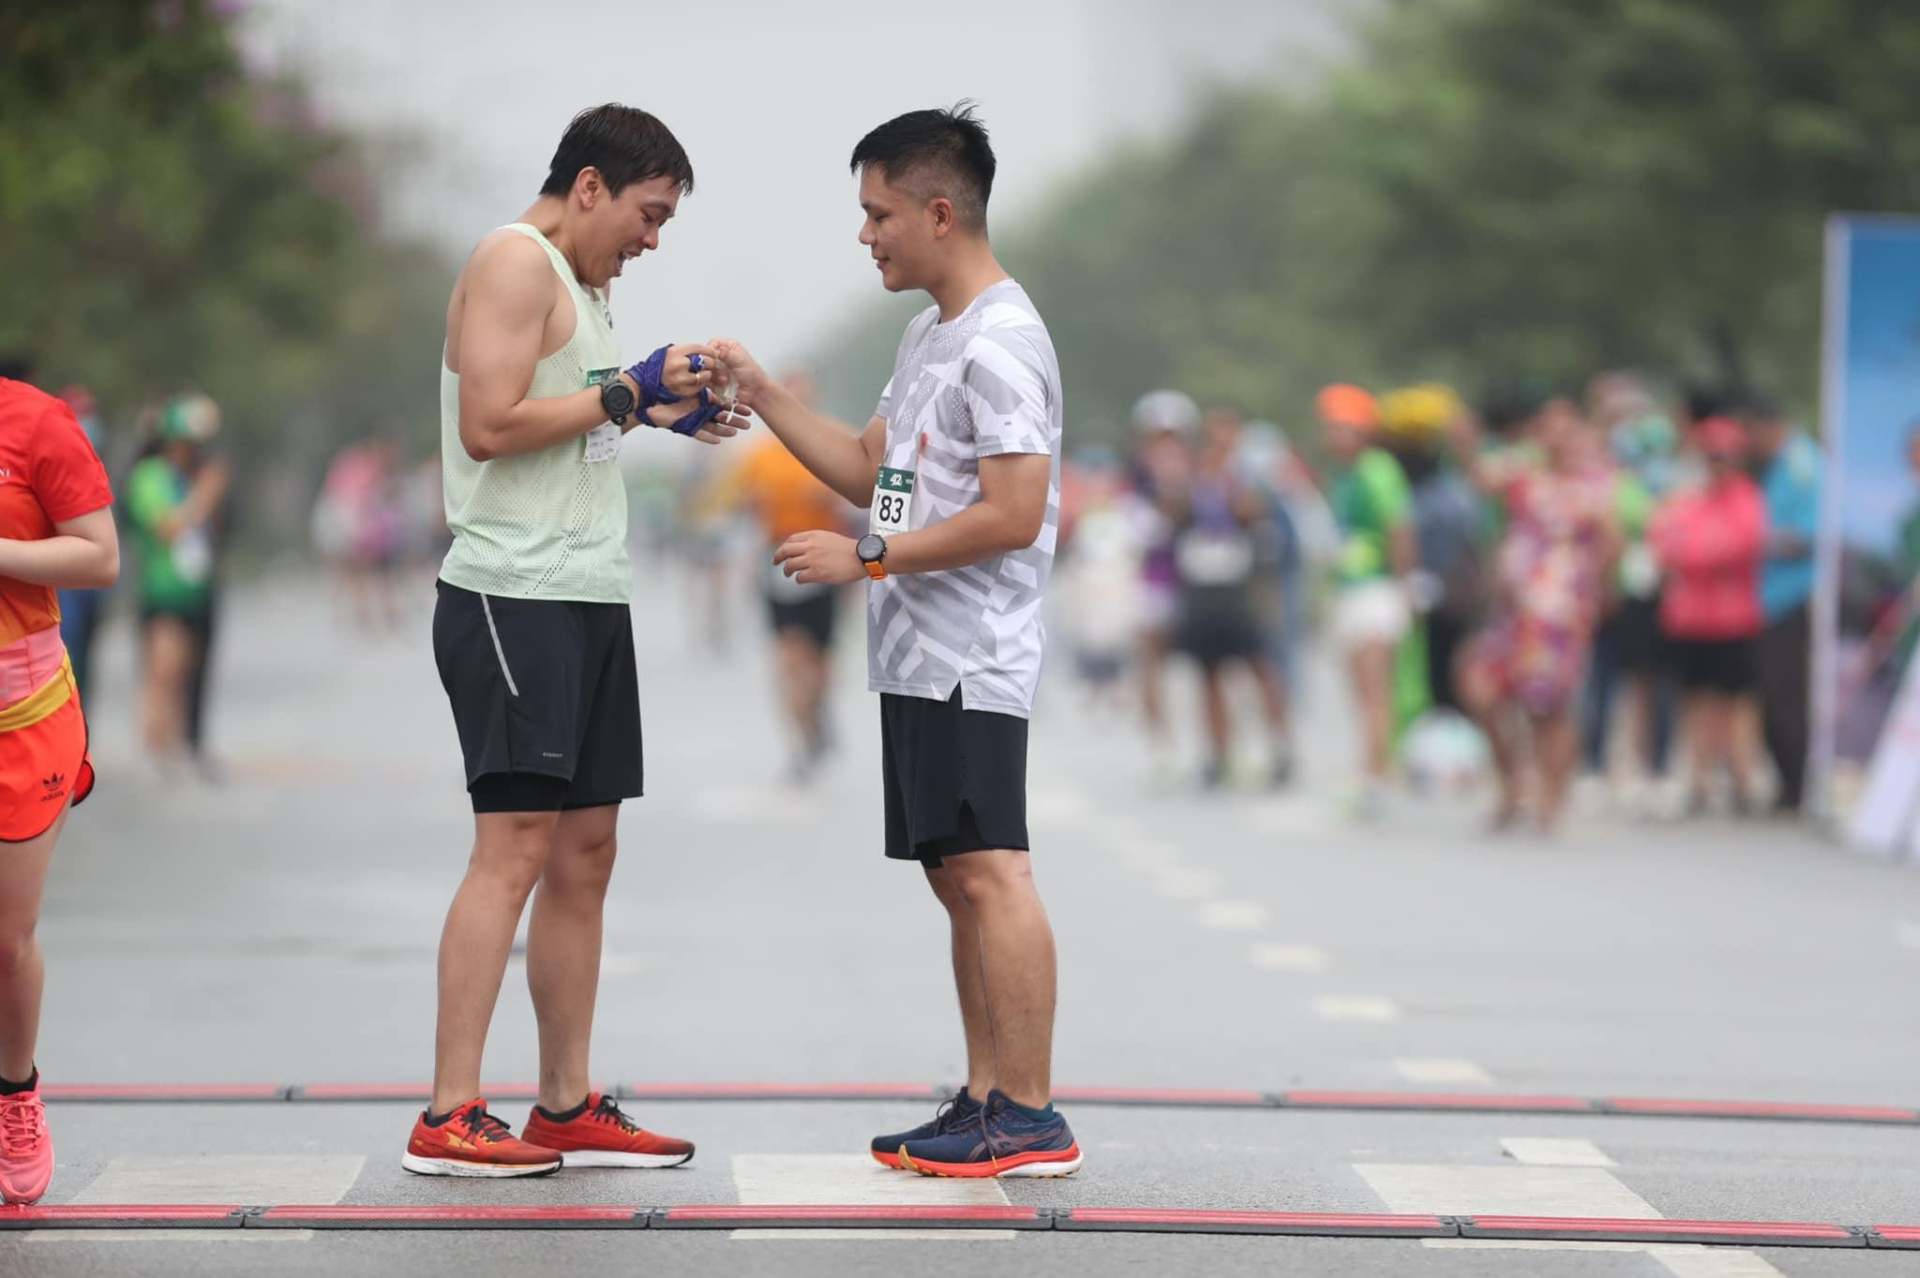 Màn cầu hôn của cặp đôi nam - nam ở vạch đích cuộc thi Marathon khiến CĐM xúc động - ảnh 1